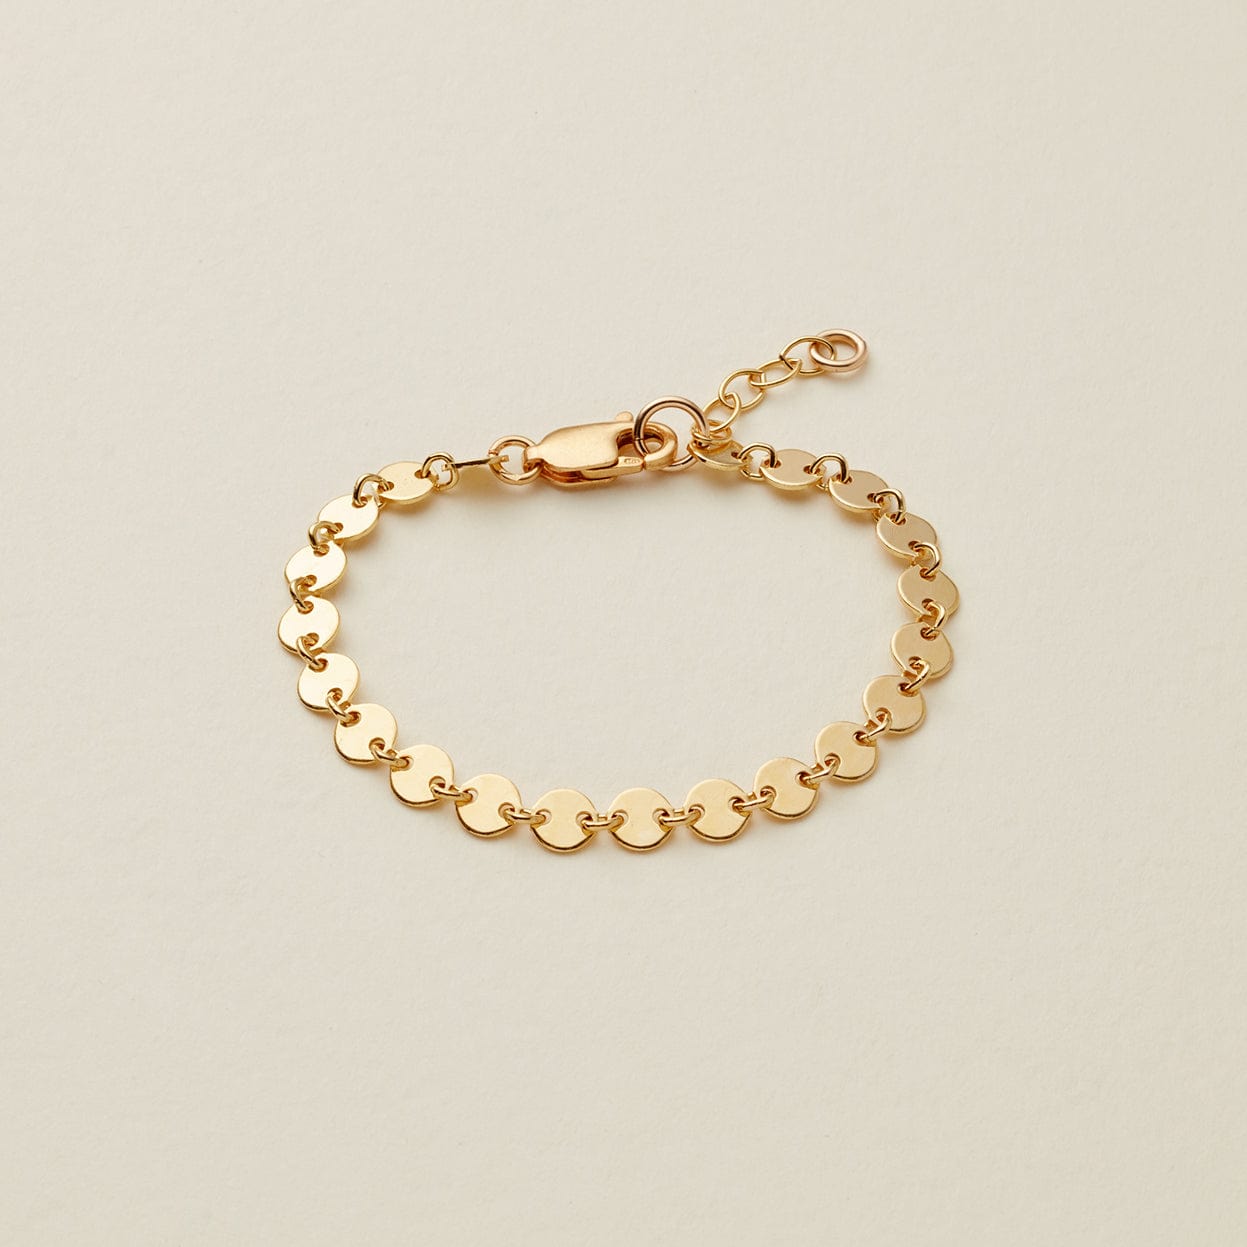 Poppy Bracelet | The Little's Collection Bracelet